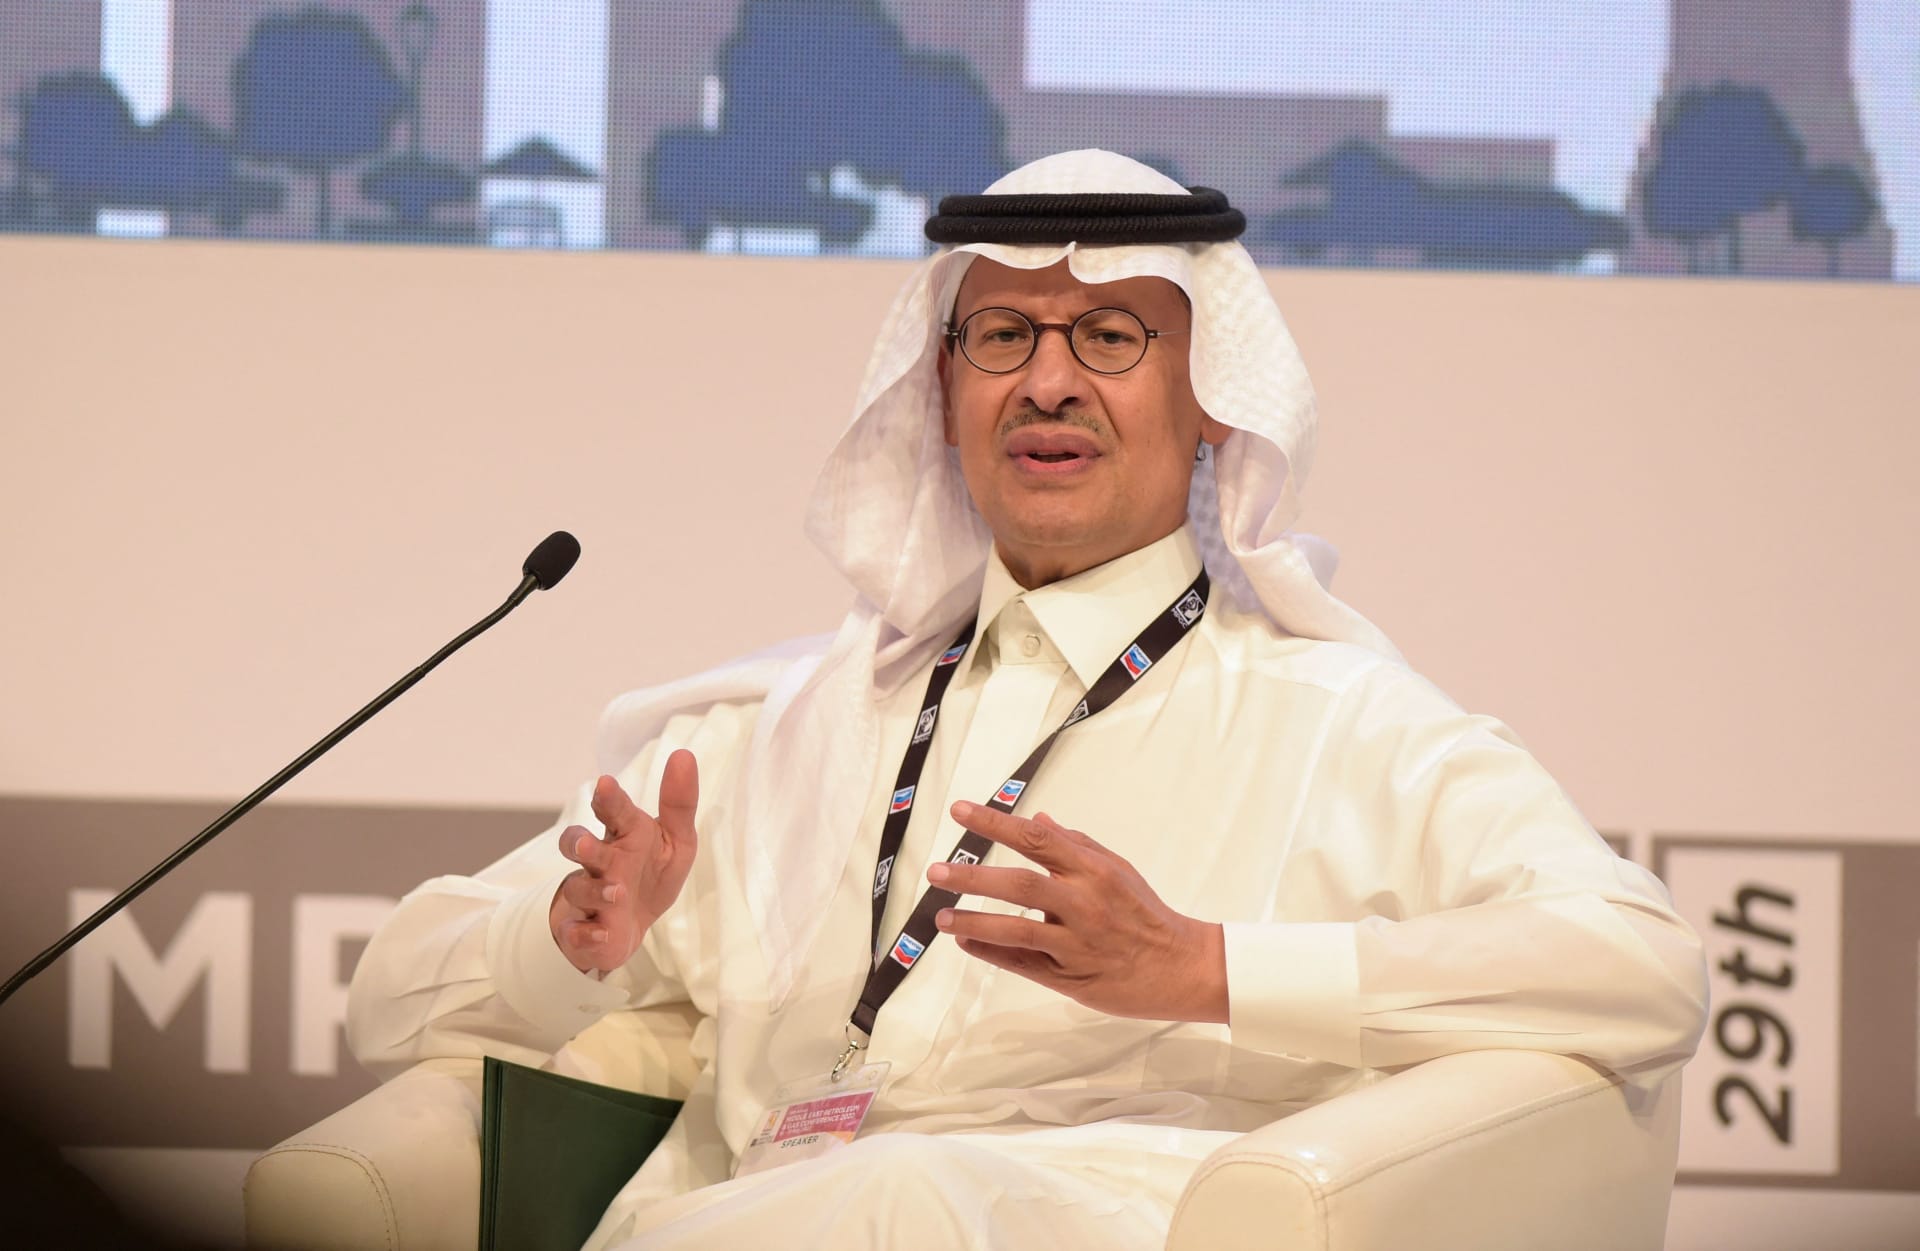 تصريحات وزير الطاقة السعودية حول "خفض الإنتاج في أي وقت" مع تراجع أسعار النفط تثير تفاعلا